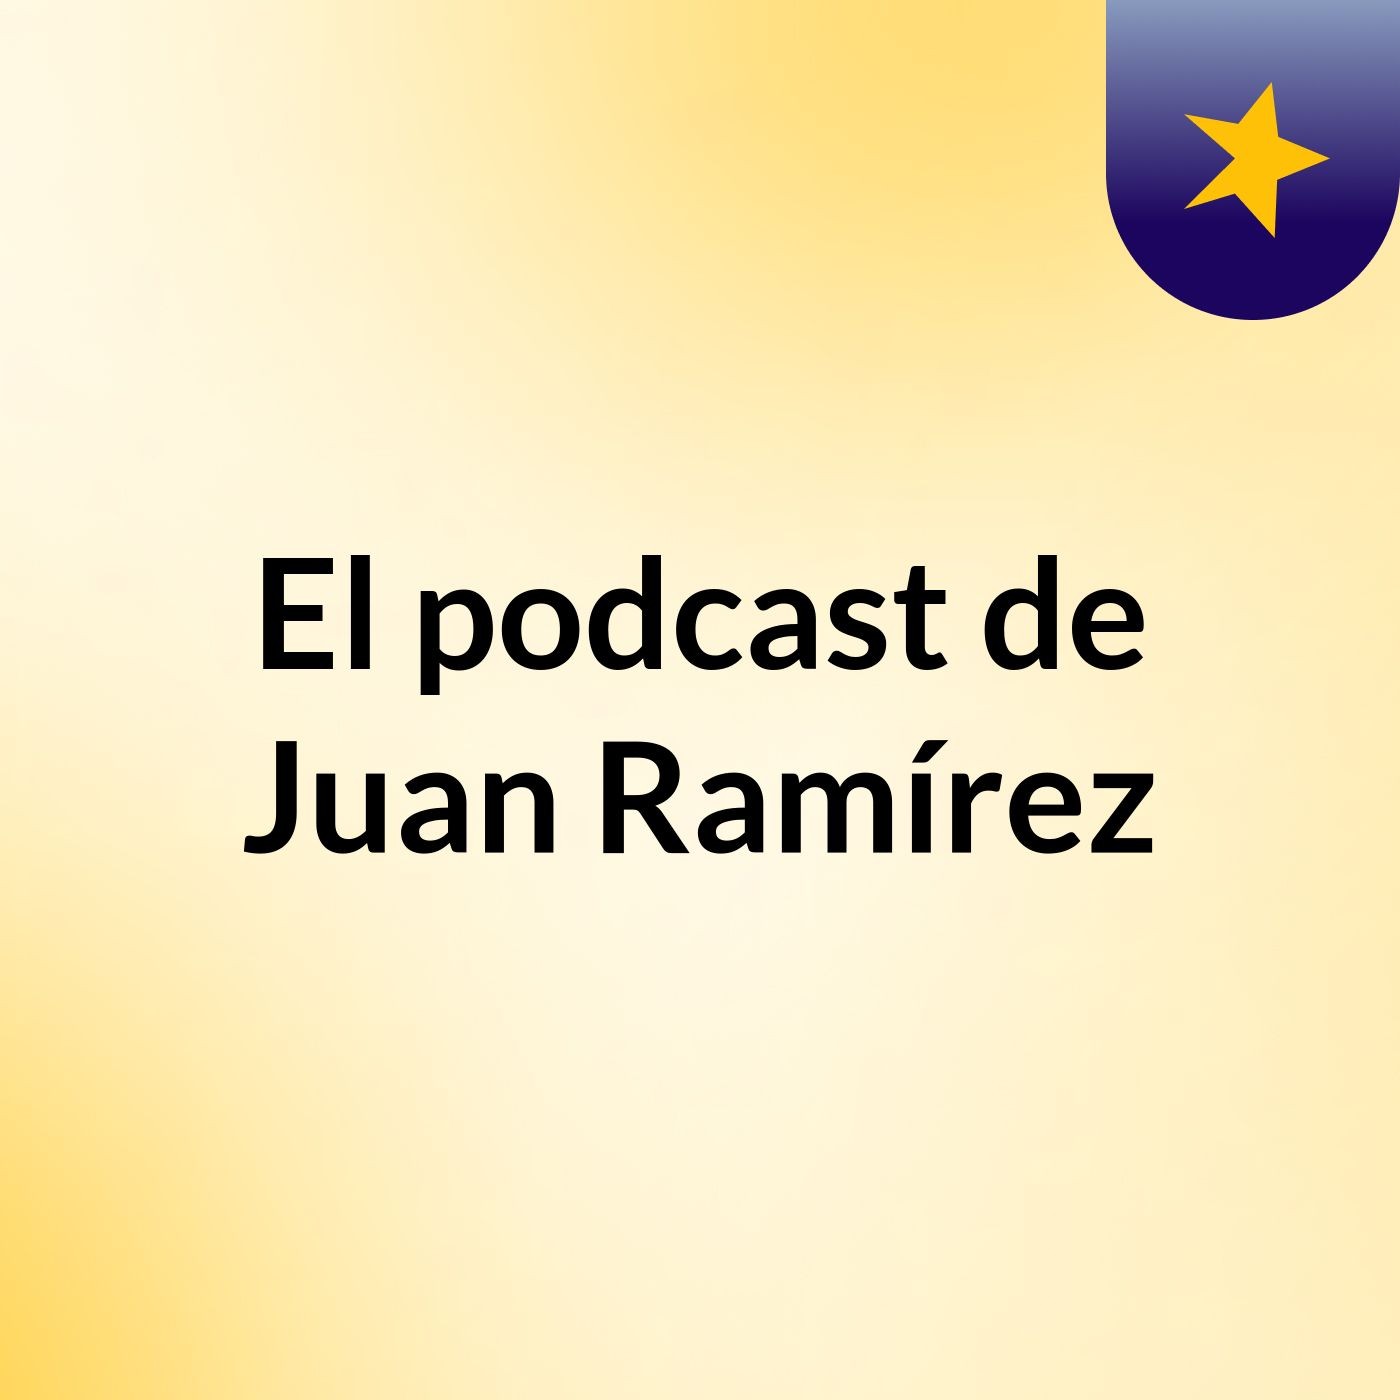 El podcast de Juan Ramírez